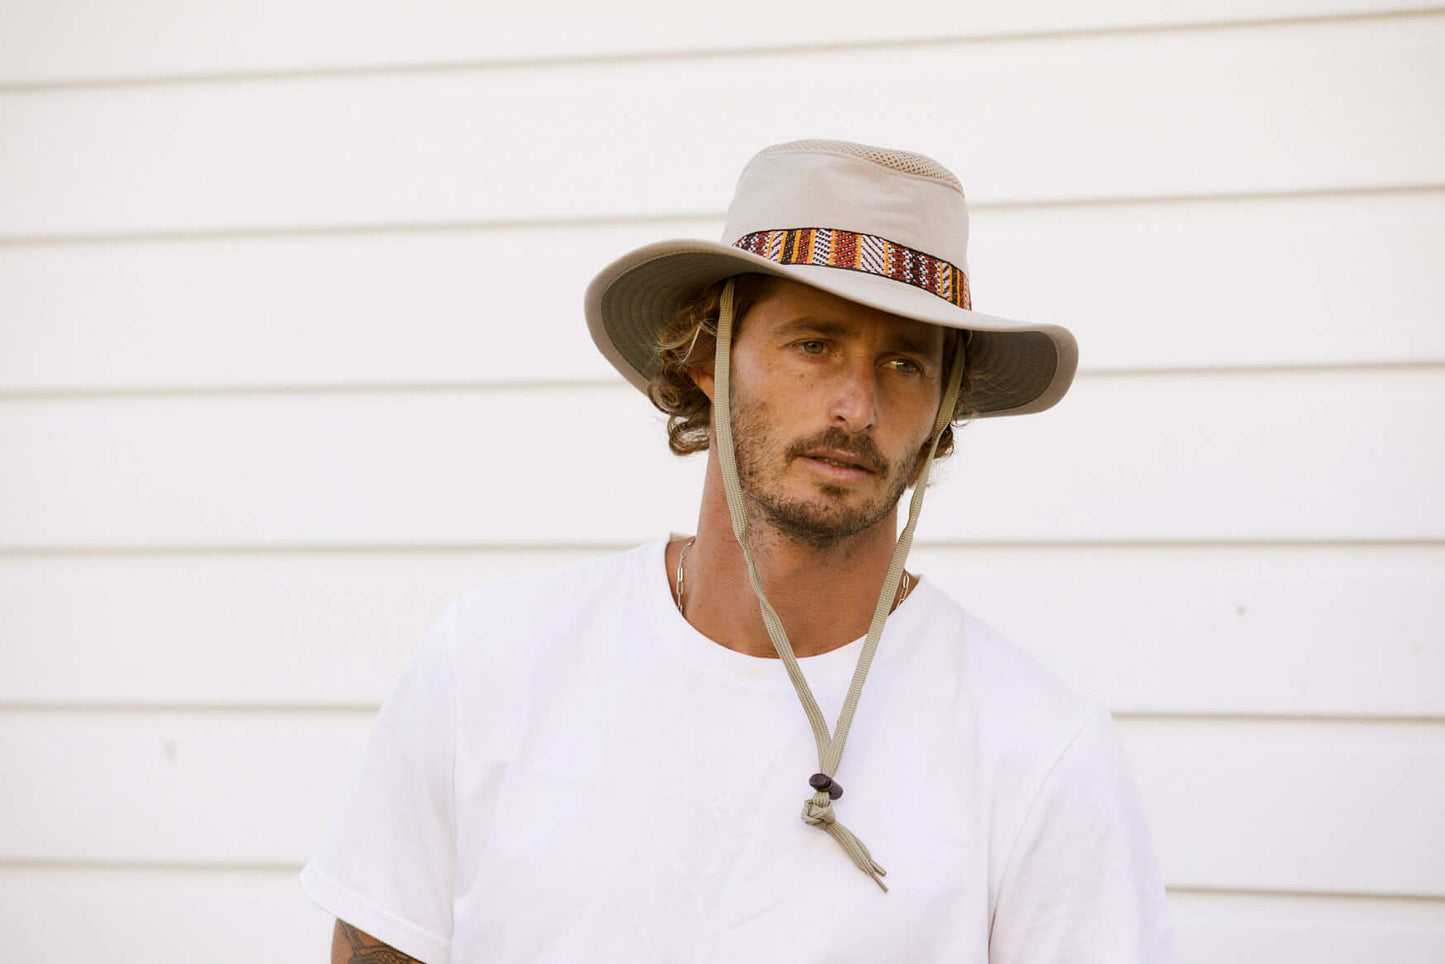 Conner Hats Men's Aztec Boater Hat, Sand, XL